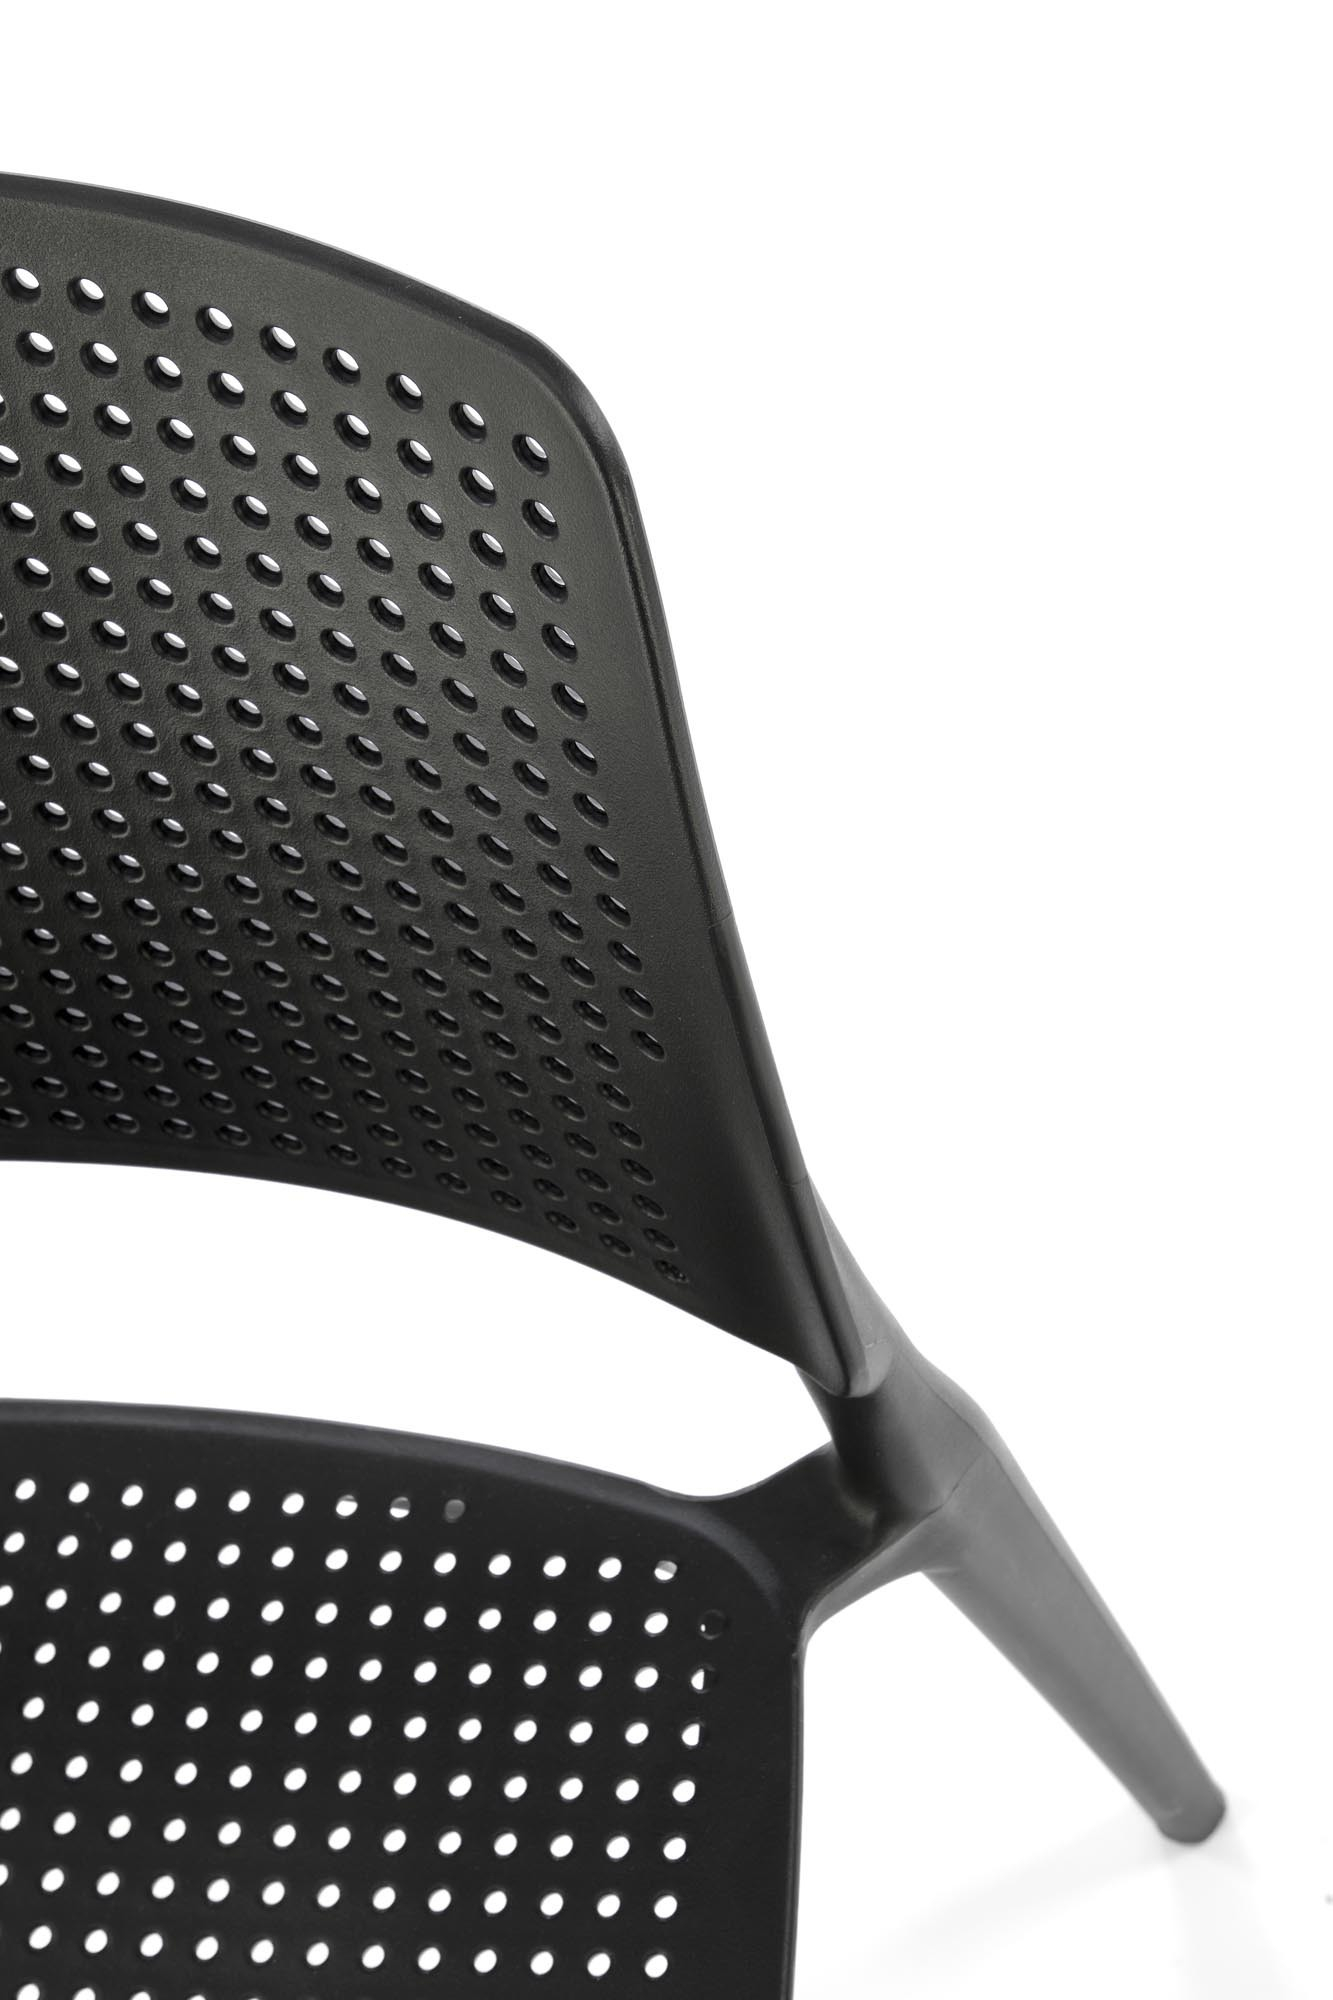 Krzesło z tworzywa K514 kolor czarny